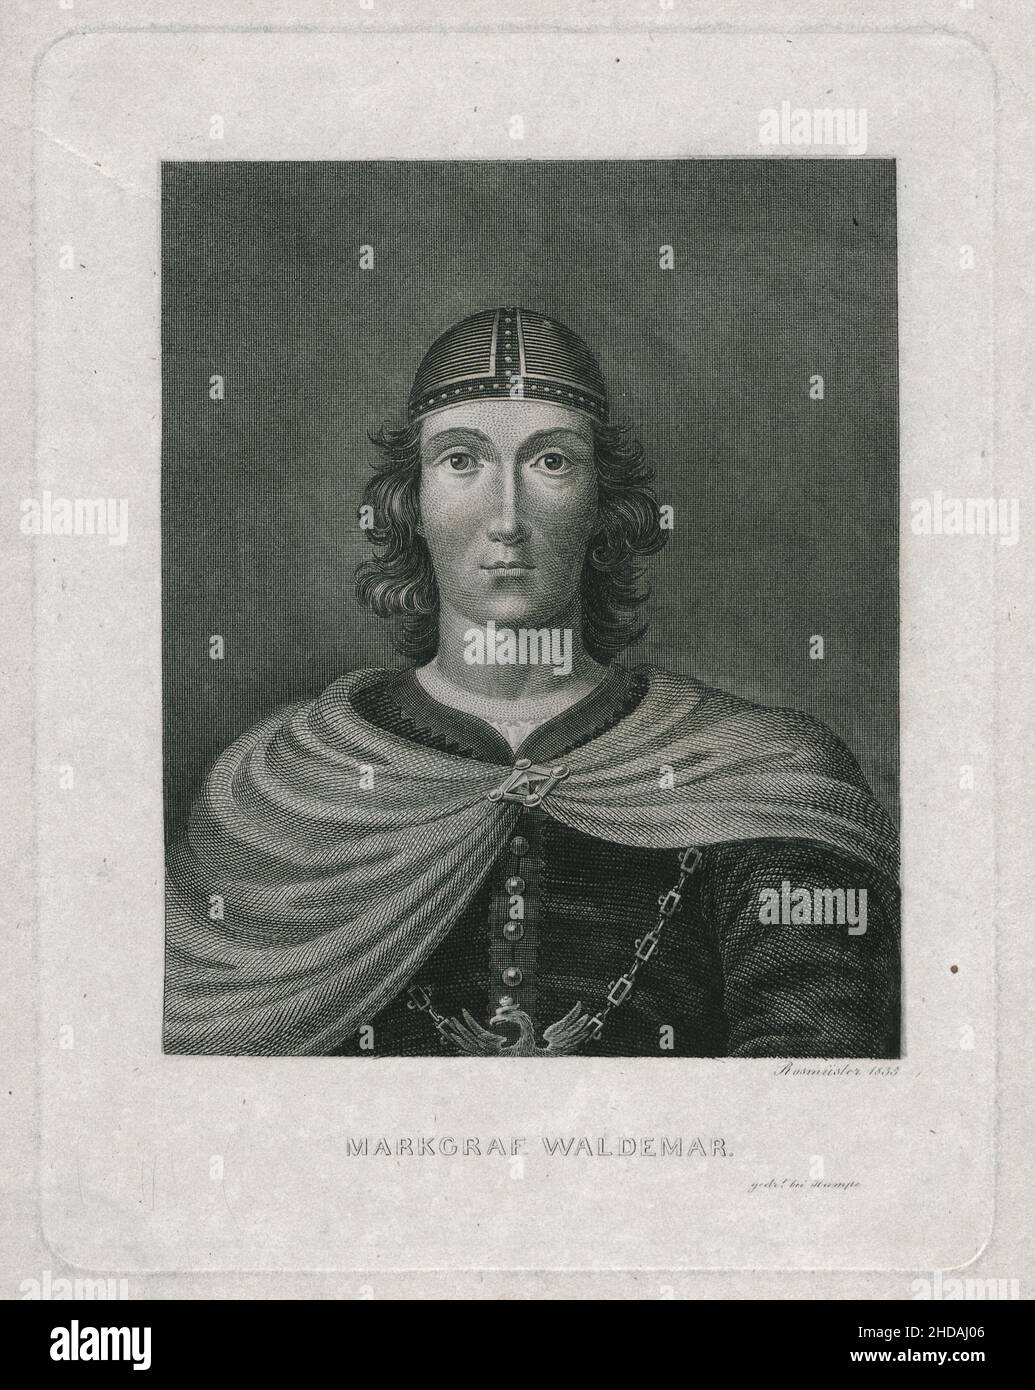 Gravur von Markgraf Waldemar, 1835 Waldemar der große (c. 1280 – 1319), Mitglied des Hauses Ascania, war ab 1 Markgraf von Brandenburg-Stendal Stockfoto